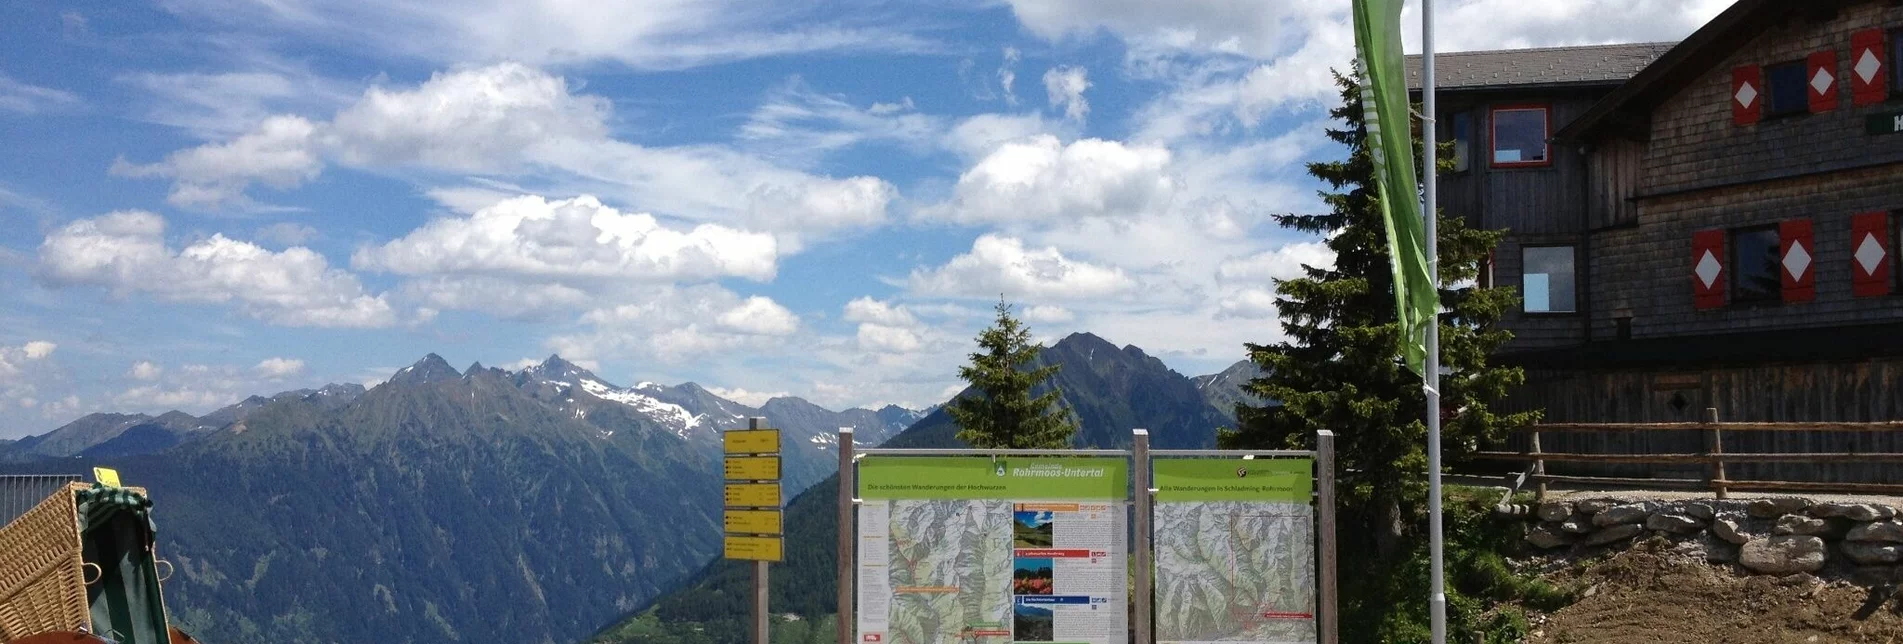 Wanderung Von der Hochwurzen nach Untertal-Dorf - Touren-Impression #1 | © Tourismusverband Schladming